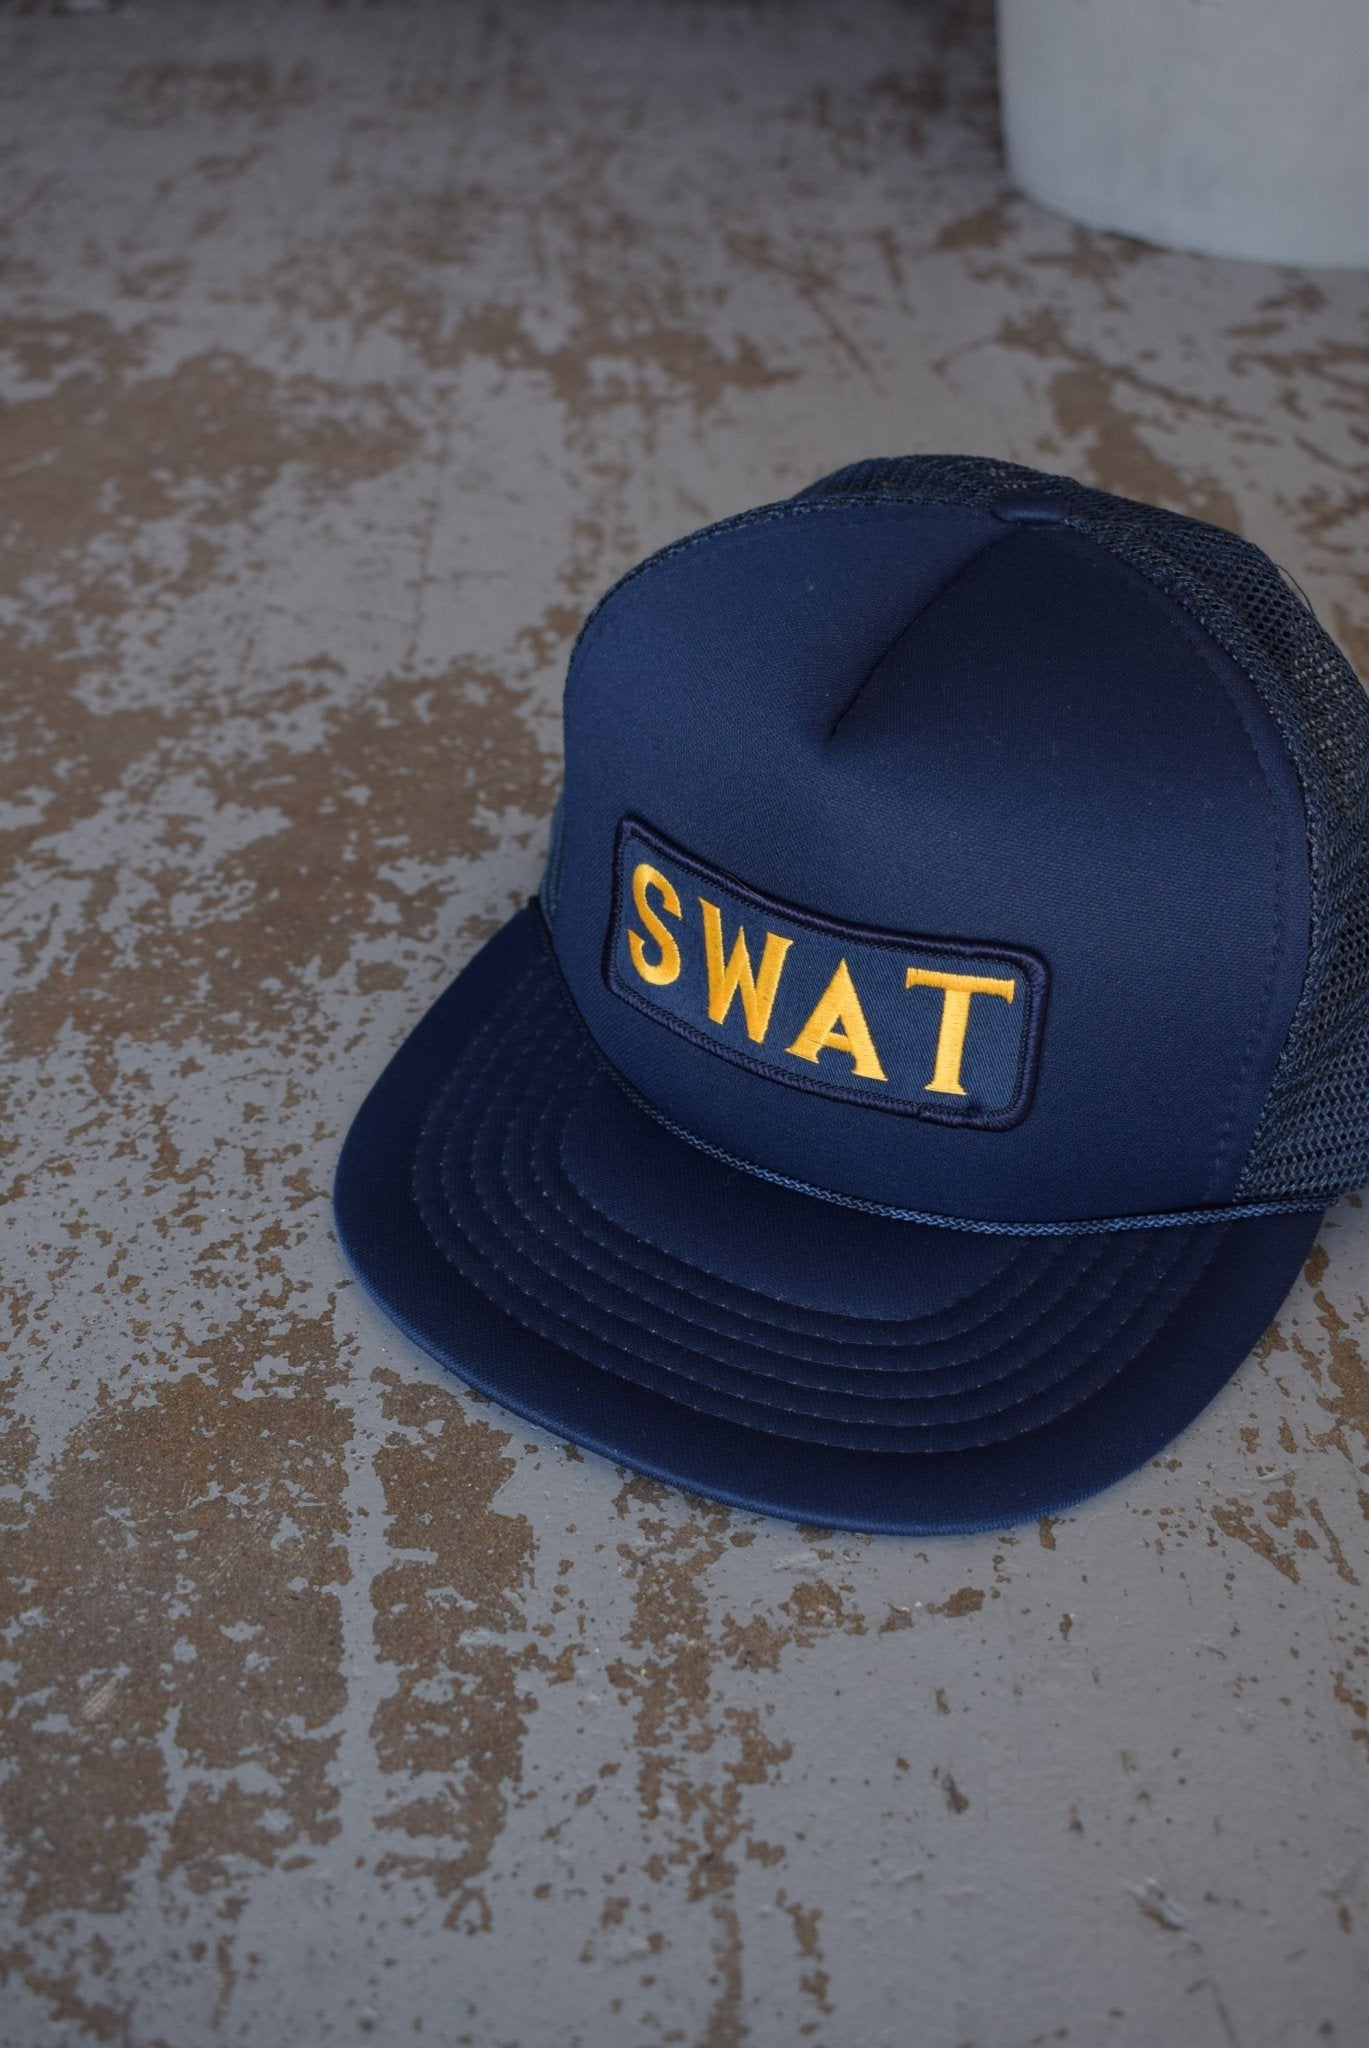 Vintage 90s SWAT Trucker Hat - Retrospective Store